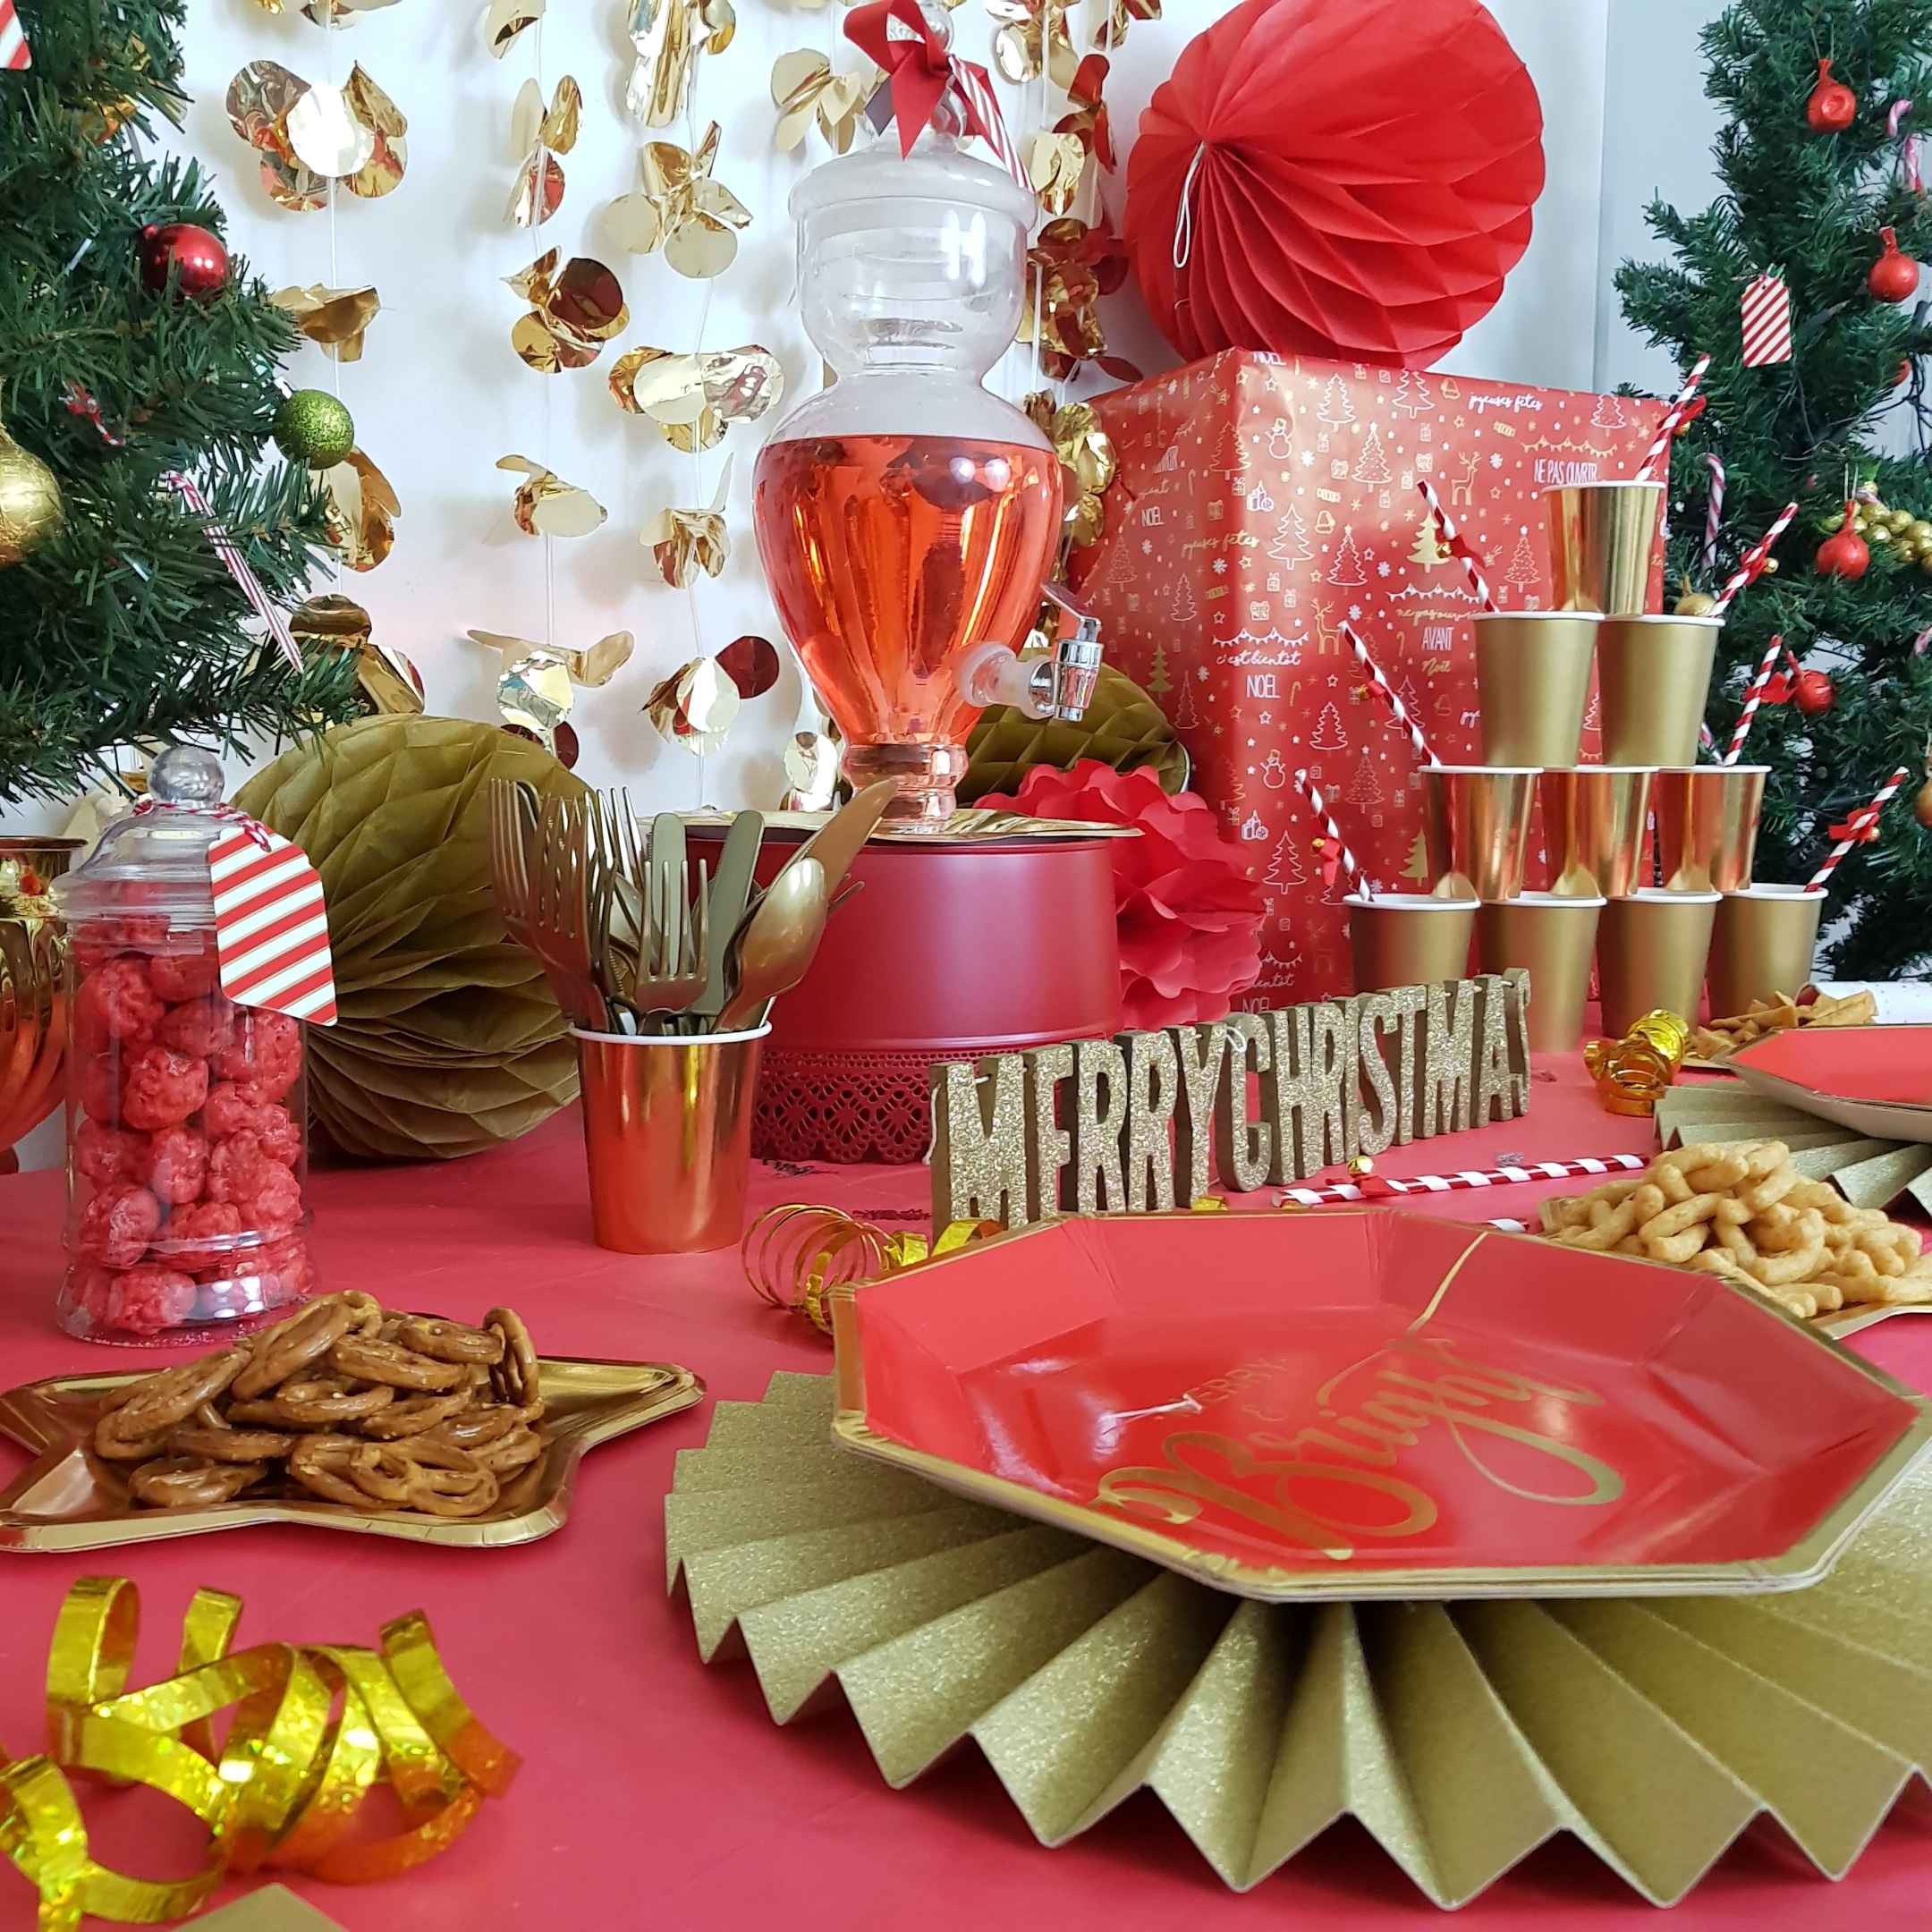 Kit arche à ballons - Rose Gold et Blanc - Jour de Fête - Bonne Année -  Tables de Noël et Réveillon